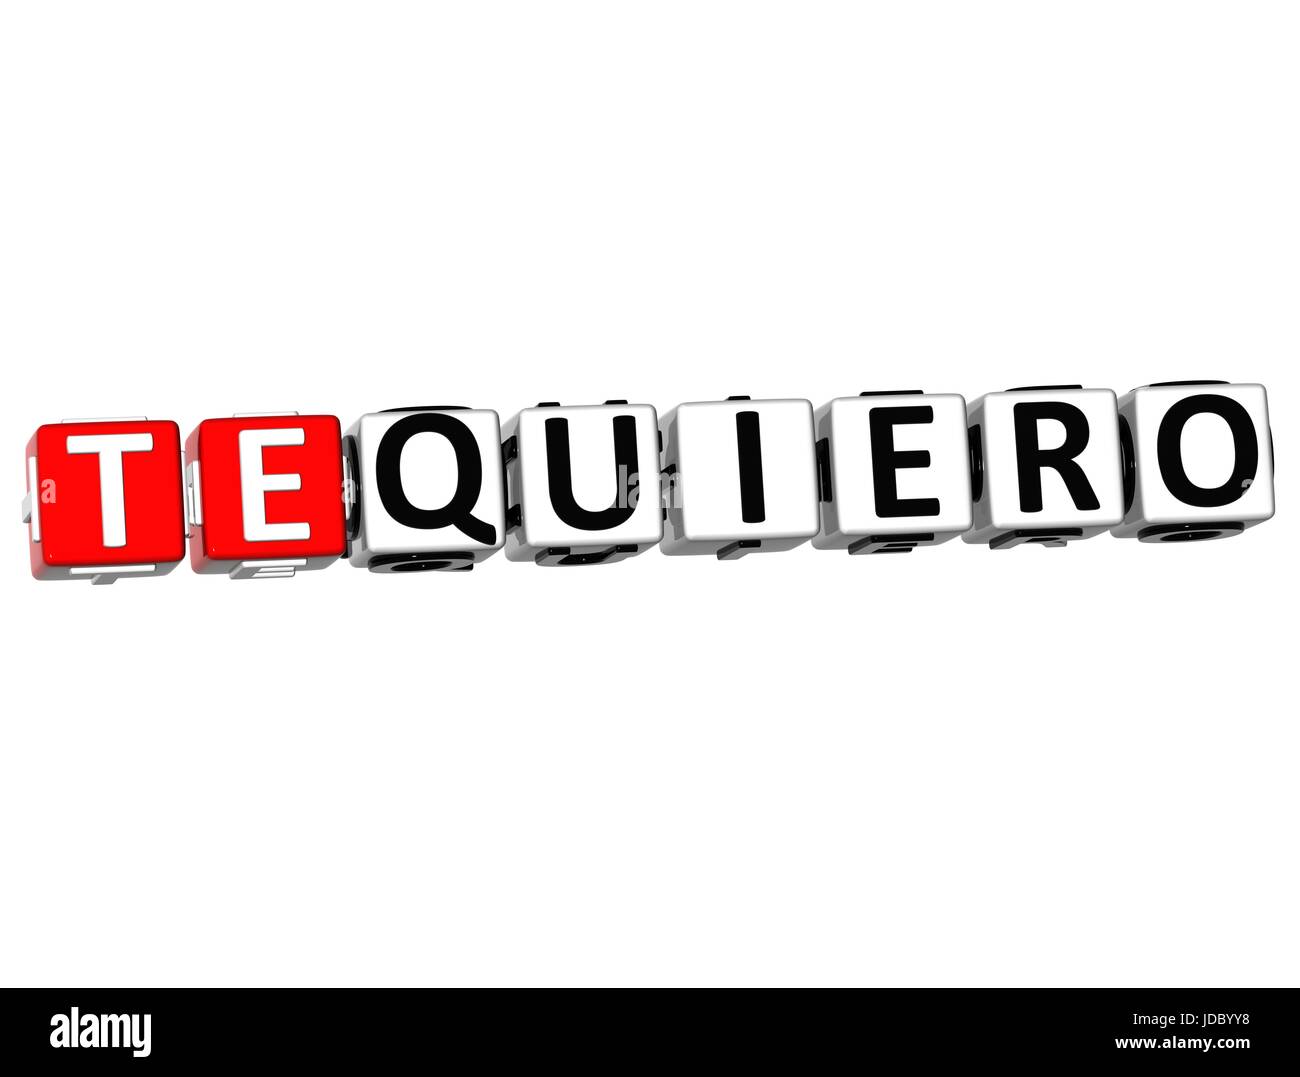 3D Te Quiero Block Text on white background Stock Photo